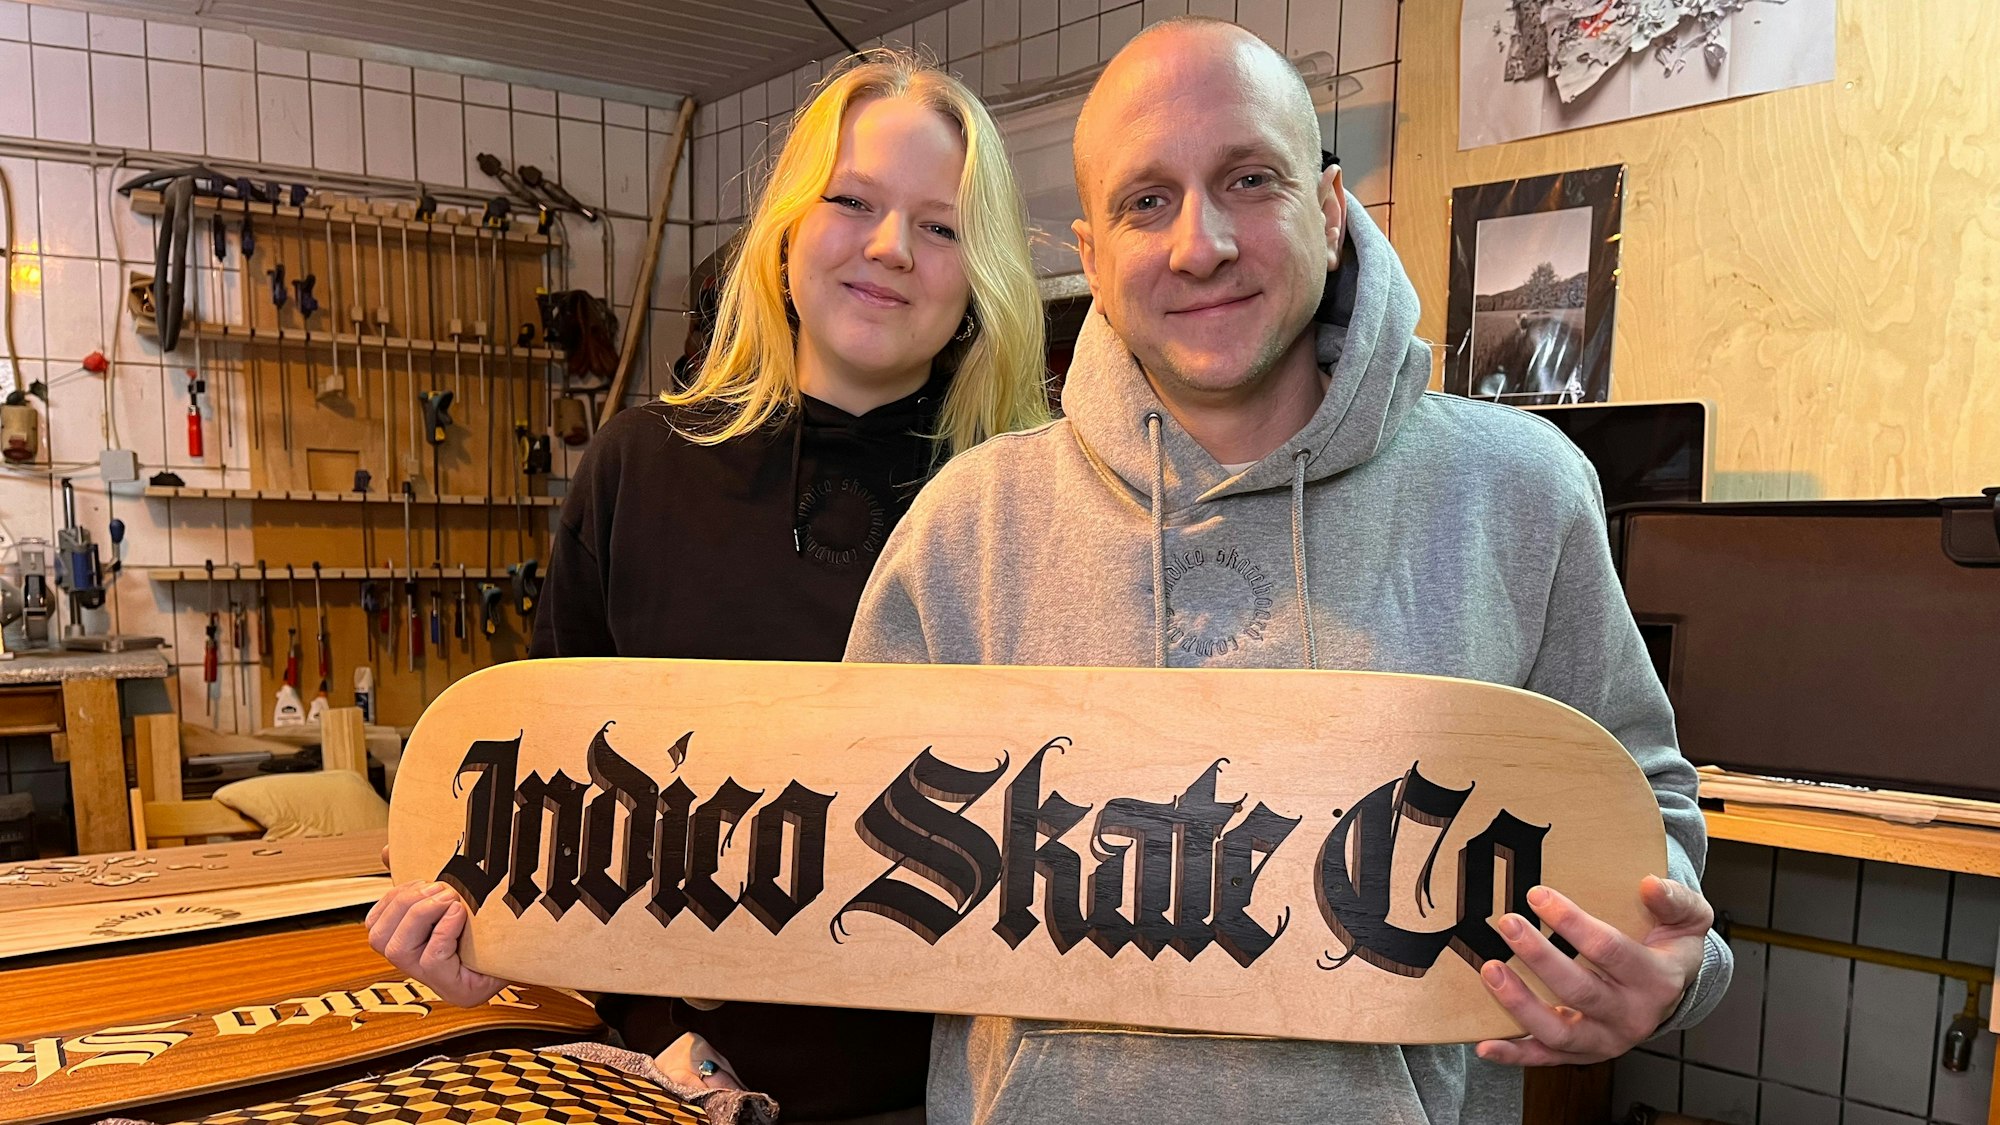 Eine junge Frau mit blondem Haar und ein Mann mit Glatze und Hoodie stehen nebeneinander. Er hält ein Holzstück, auf dem Indico Skate Co steht.